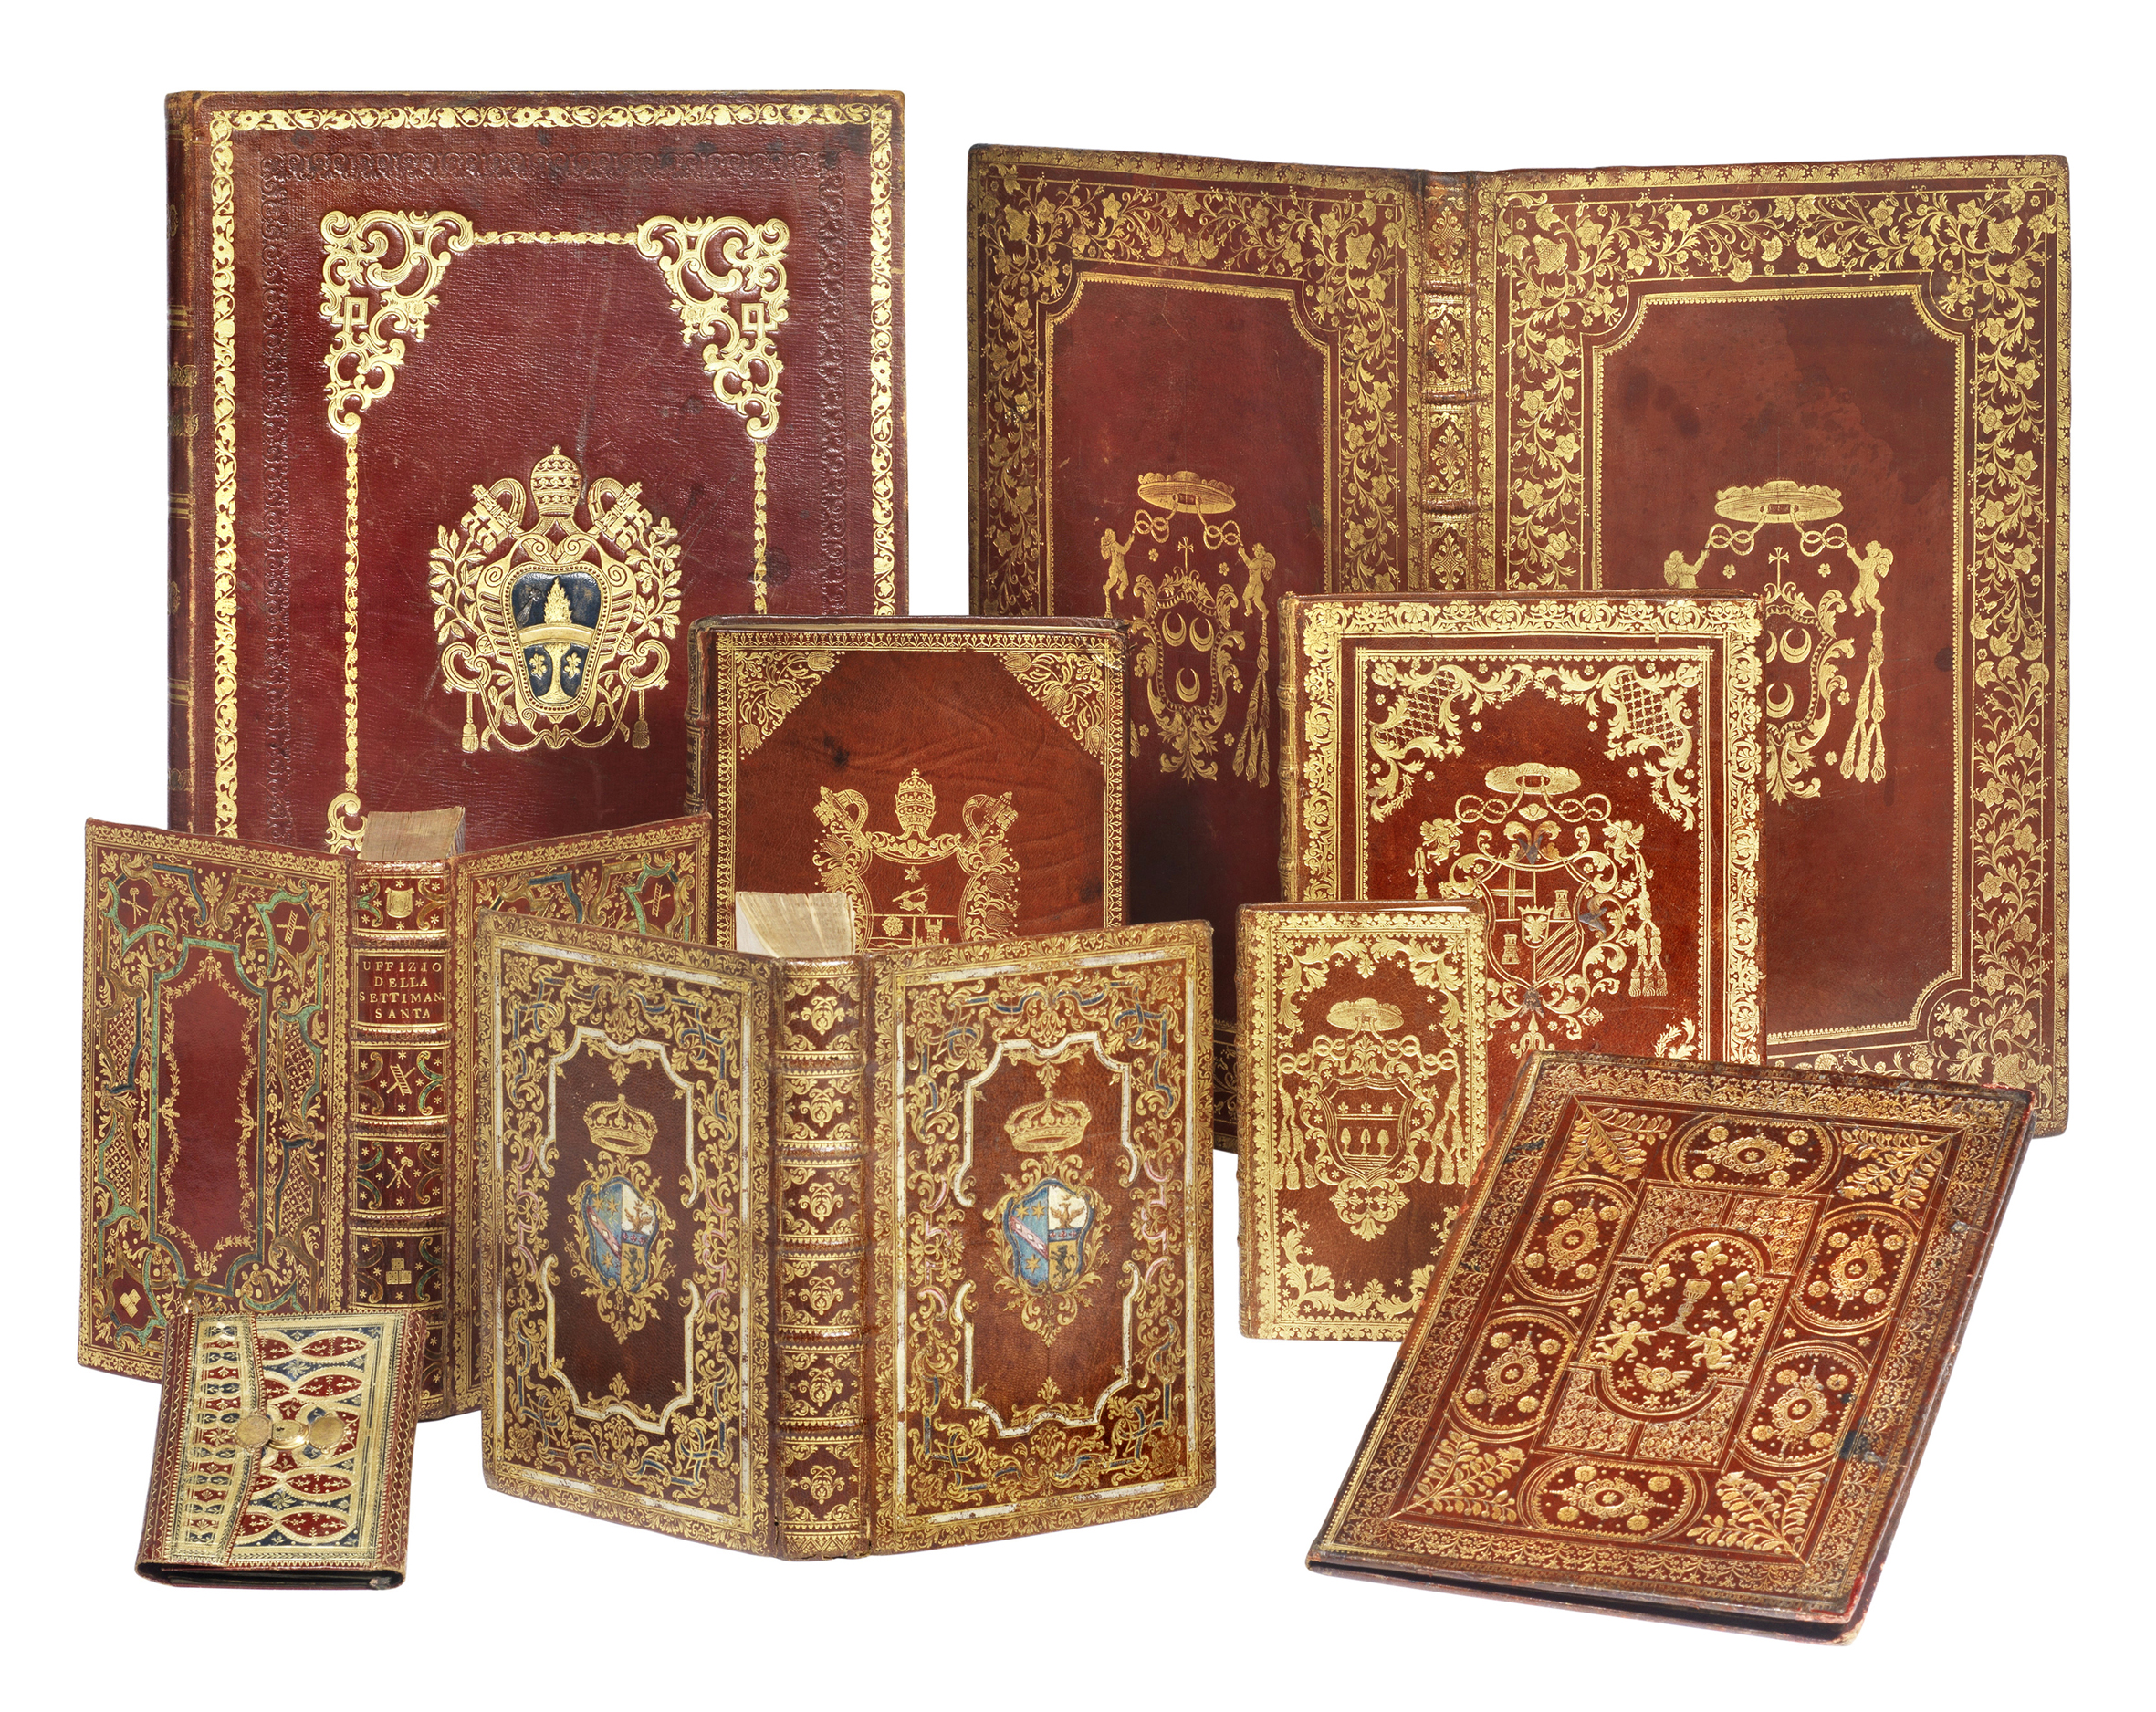 Tempo - libri, manoscritti: dai libri d’ore a vasari, fino a montanelli e battiato passando da dalì